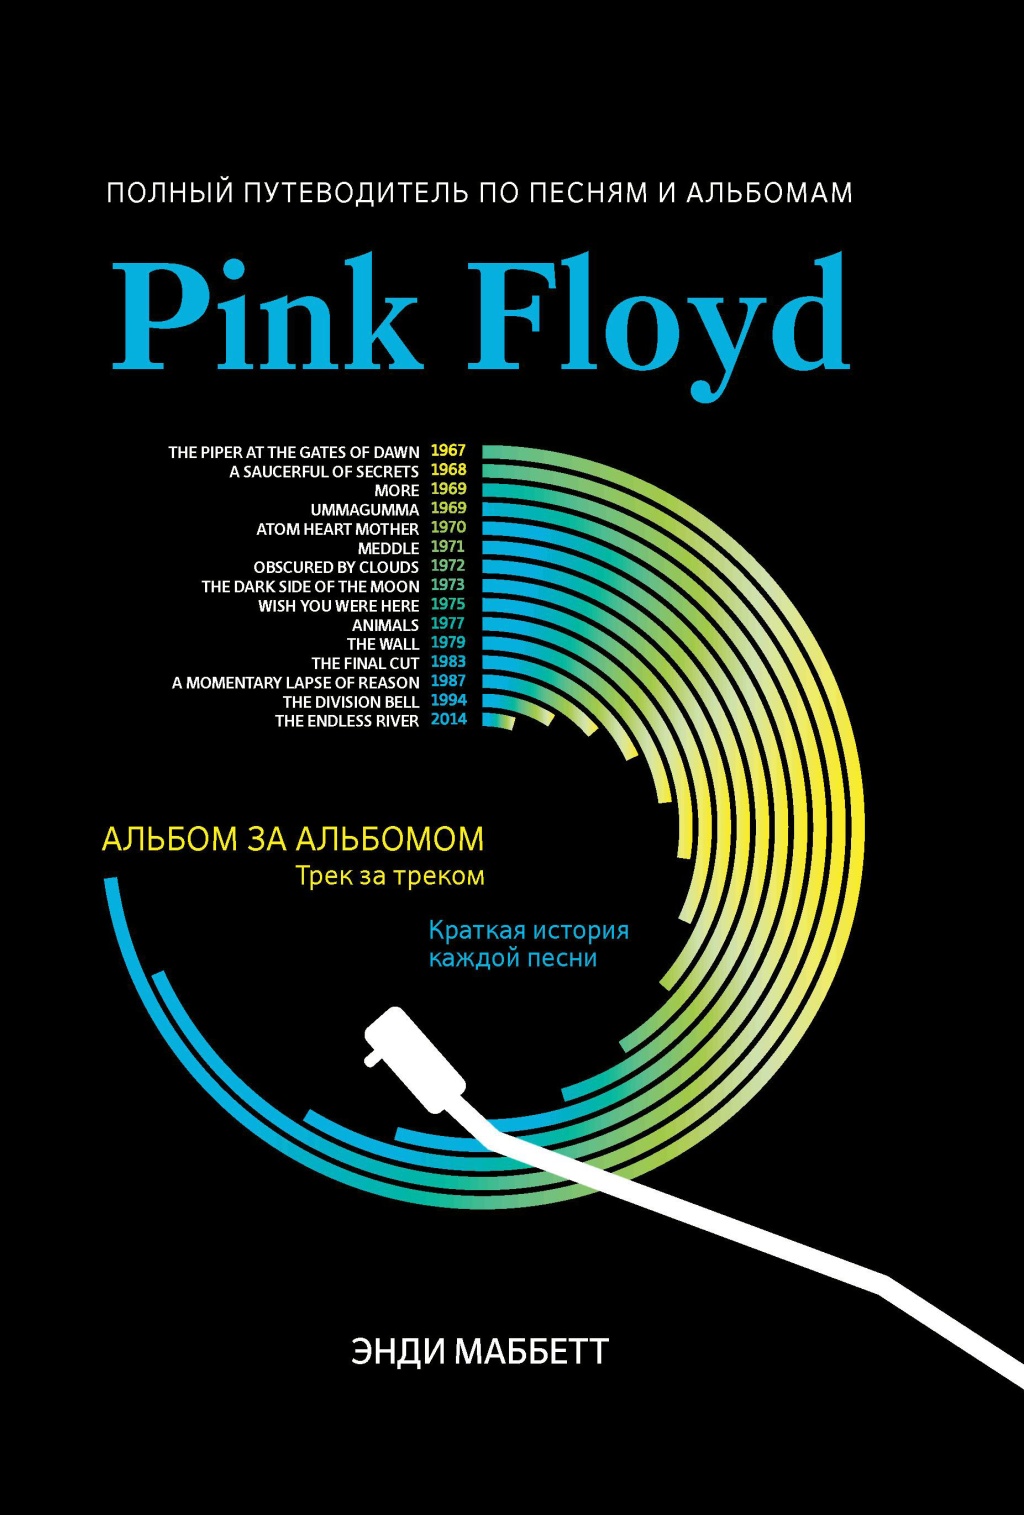 Э. Pink Floyd: полный путеводитель по песням и альбомам, издательство…